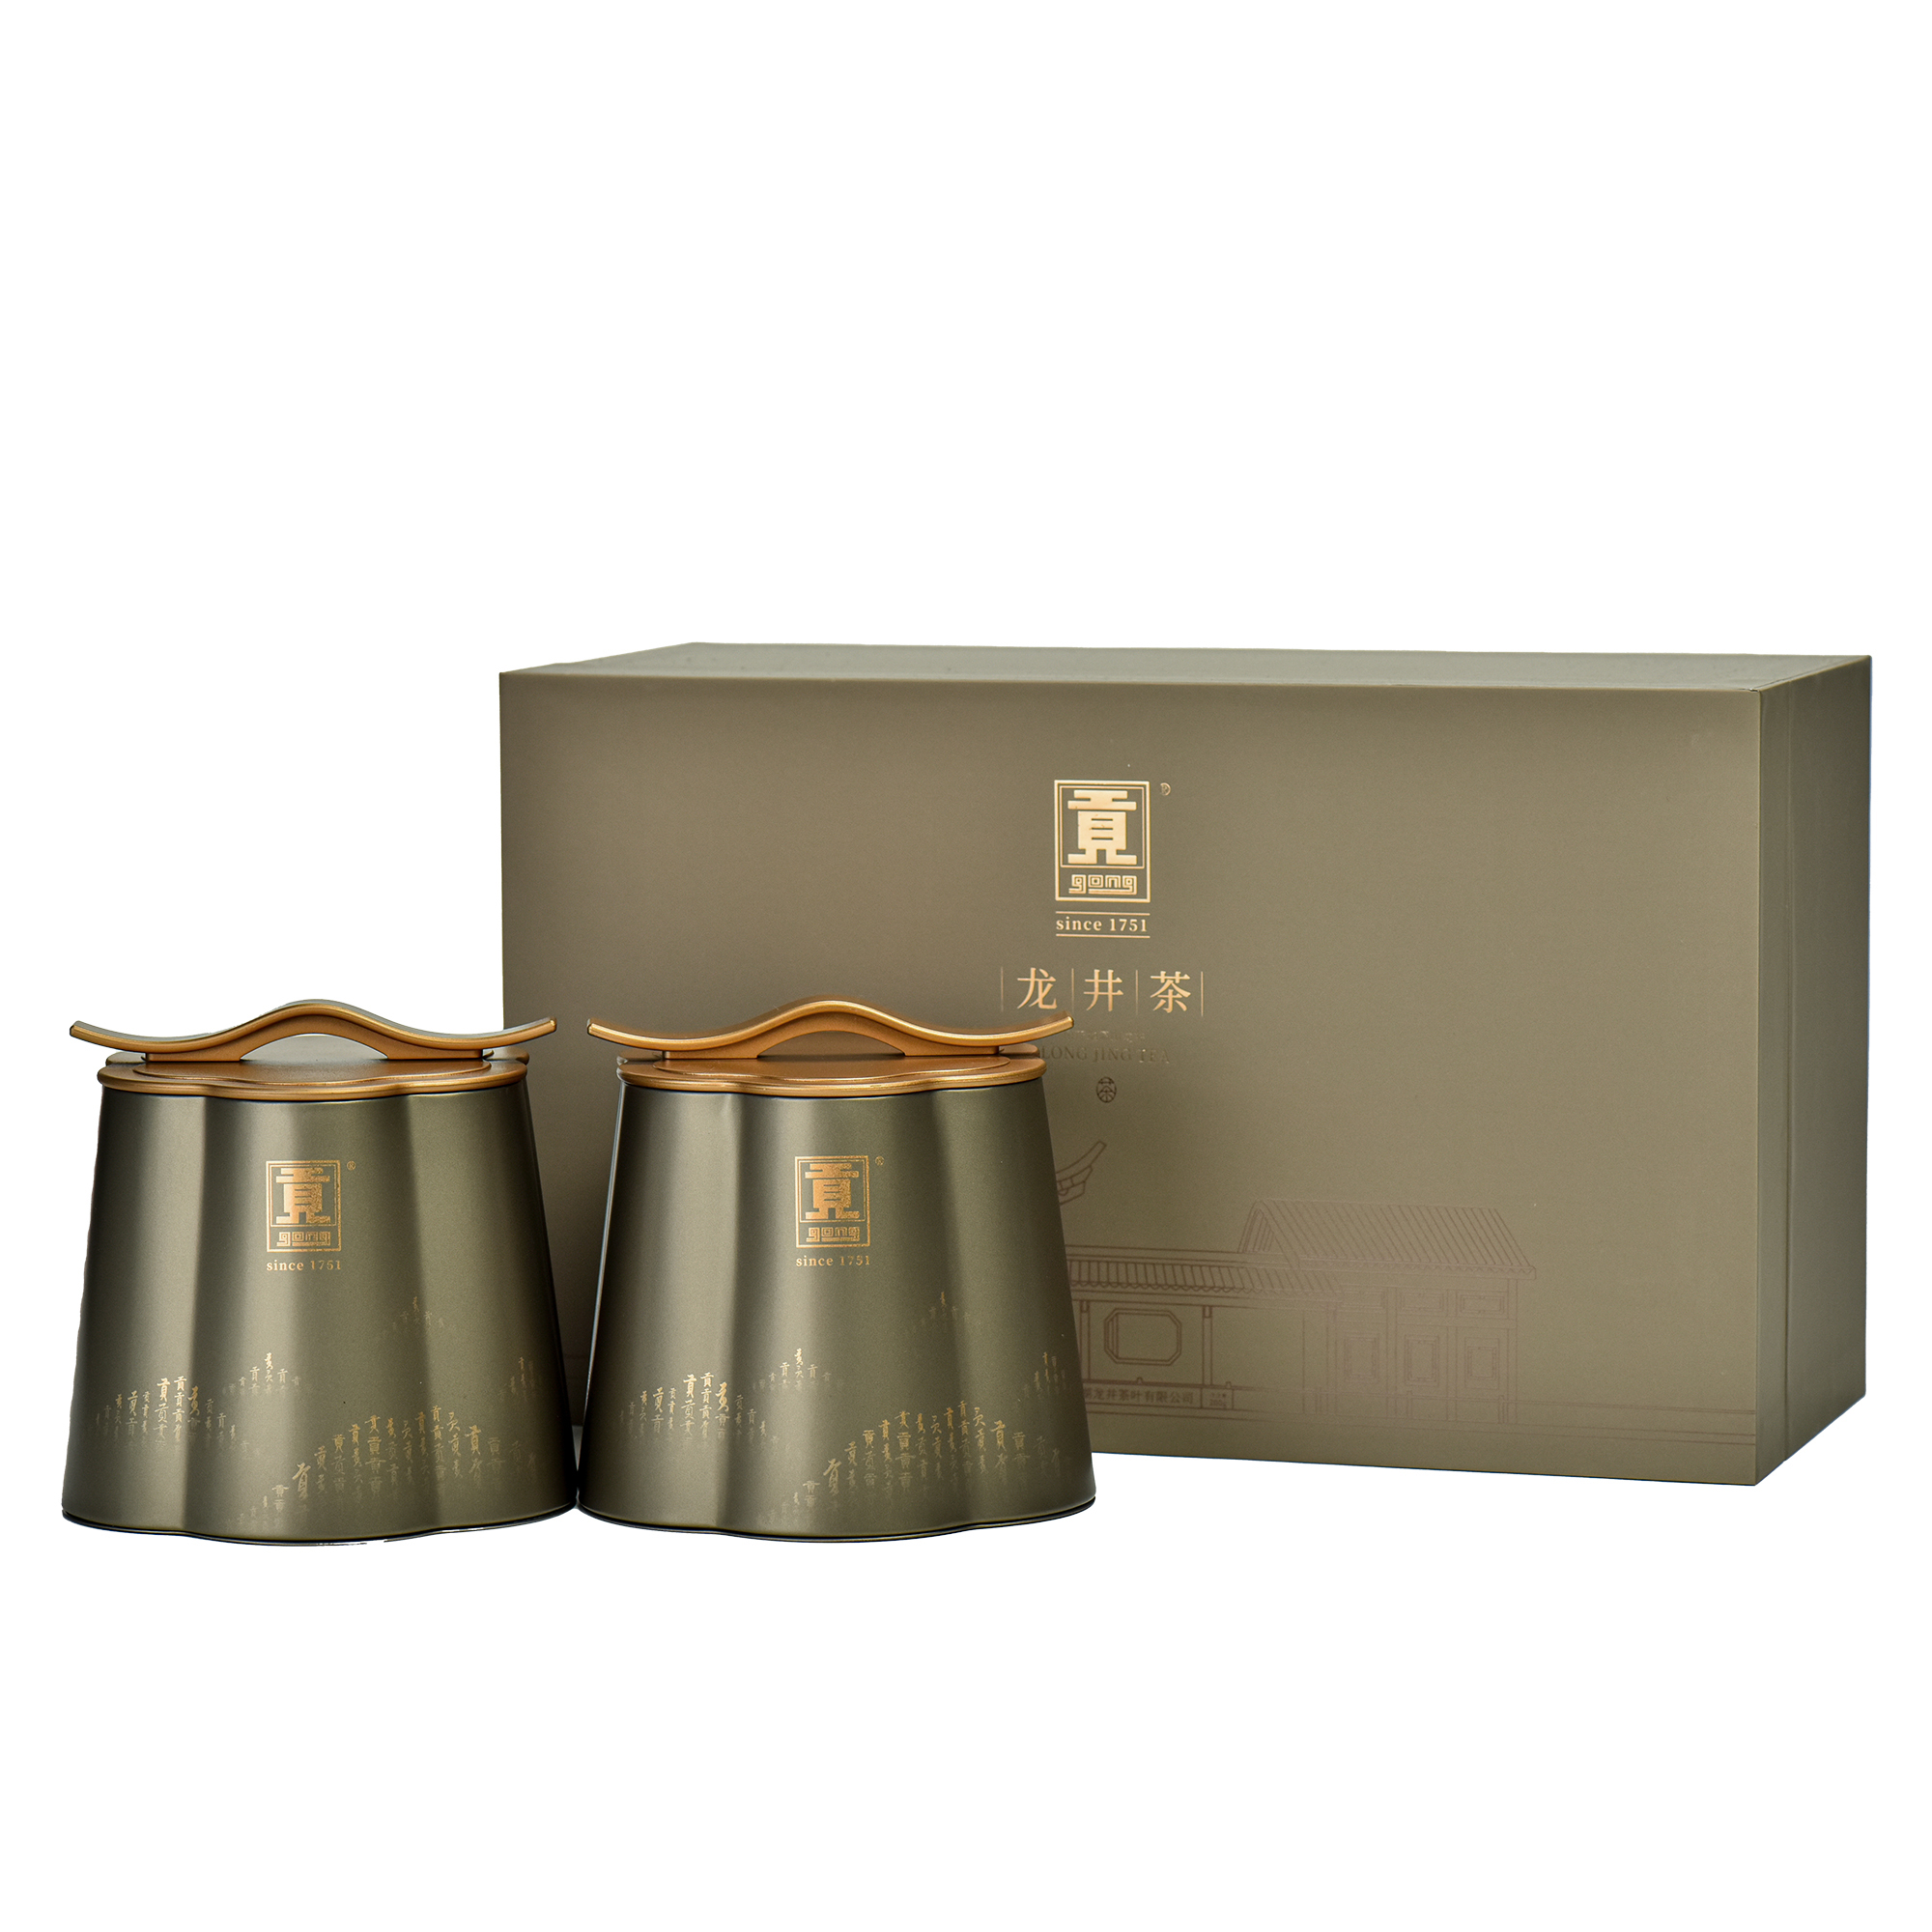 门店产品：龙井茶/龙井茶一级、二级、三级/芳廊礼盒200g